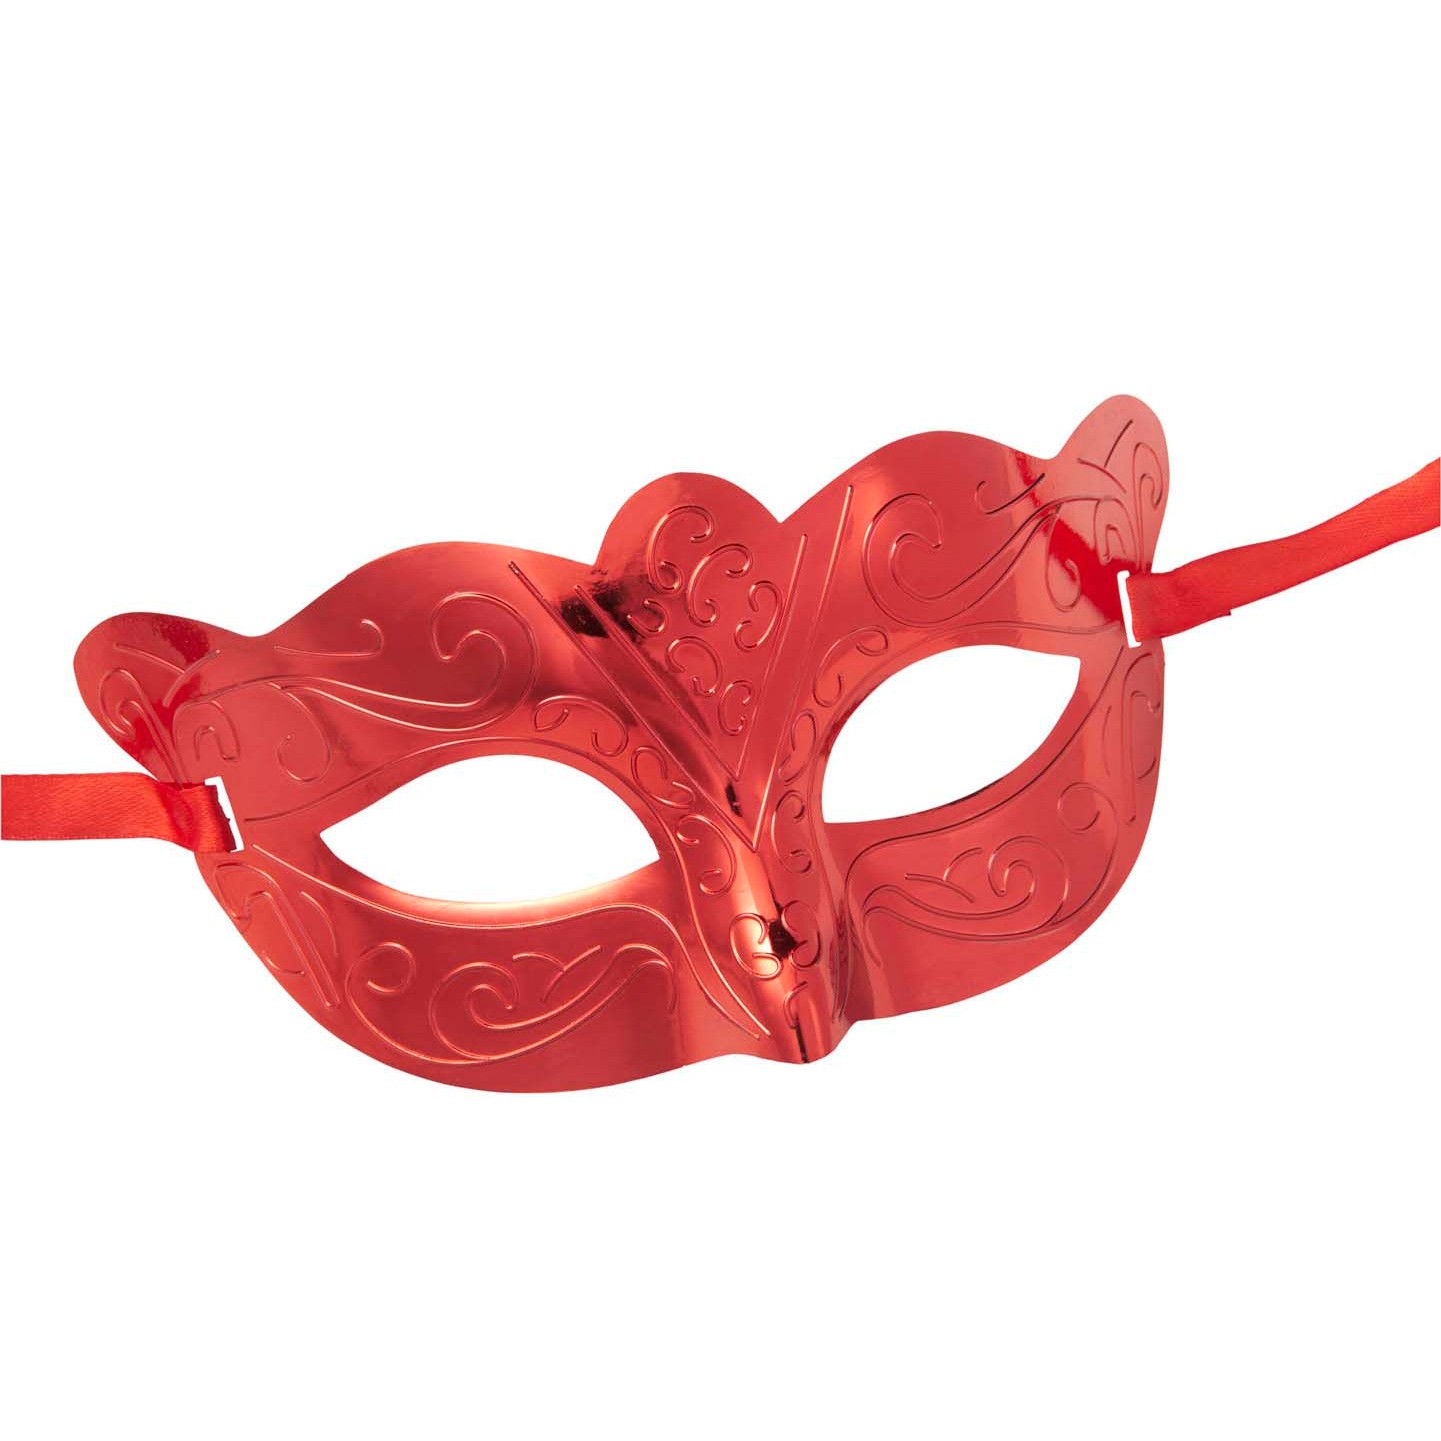 Купить красные маски. Маска Eye Mask красная д21007. Карнавальная маска красная. Маска пластиковая красная. Красная маска из пластика.